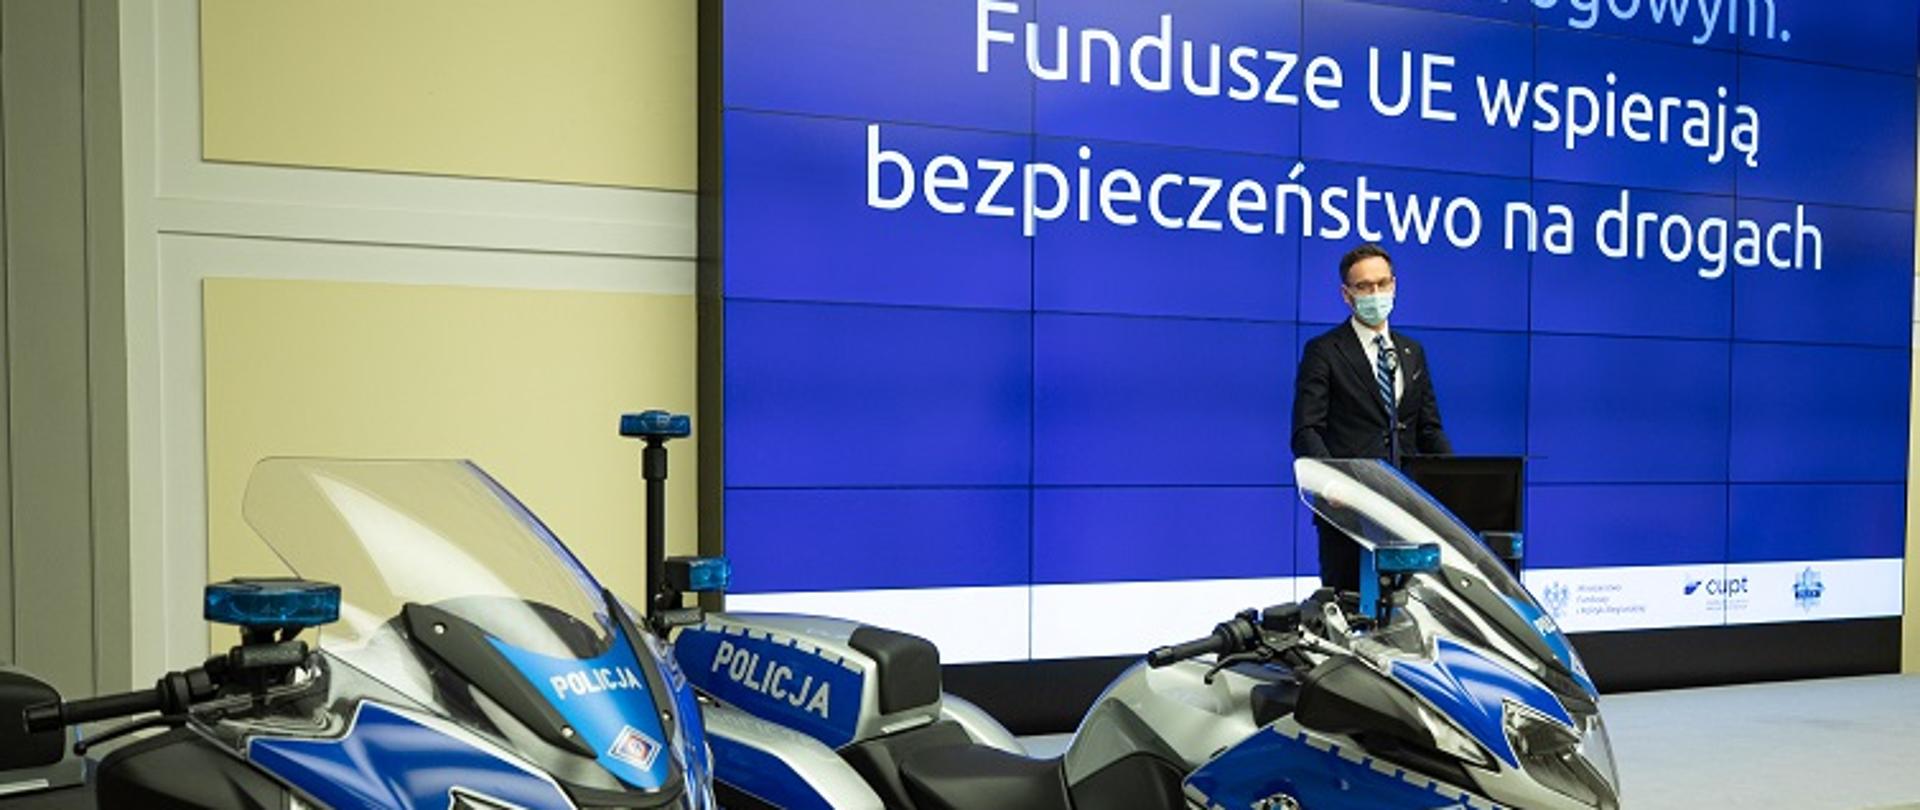 Na zdjęciu dwa motocykle oznaczone jako policyjne, za nimi stoi minister Waldemar Buda. Na ekranie napis: Fundusze UE wspierają bezpieczeństwo na drogach